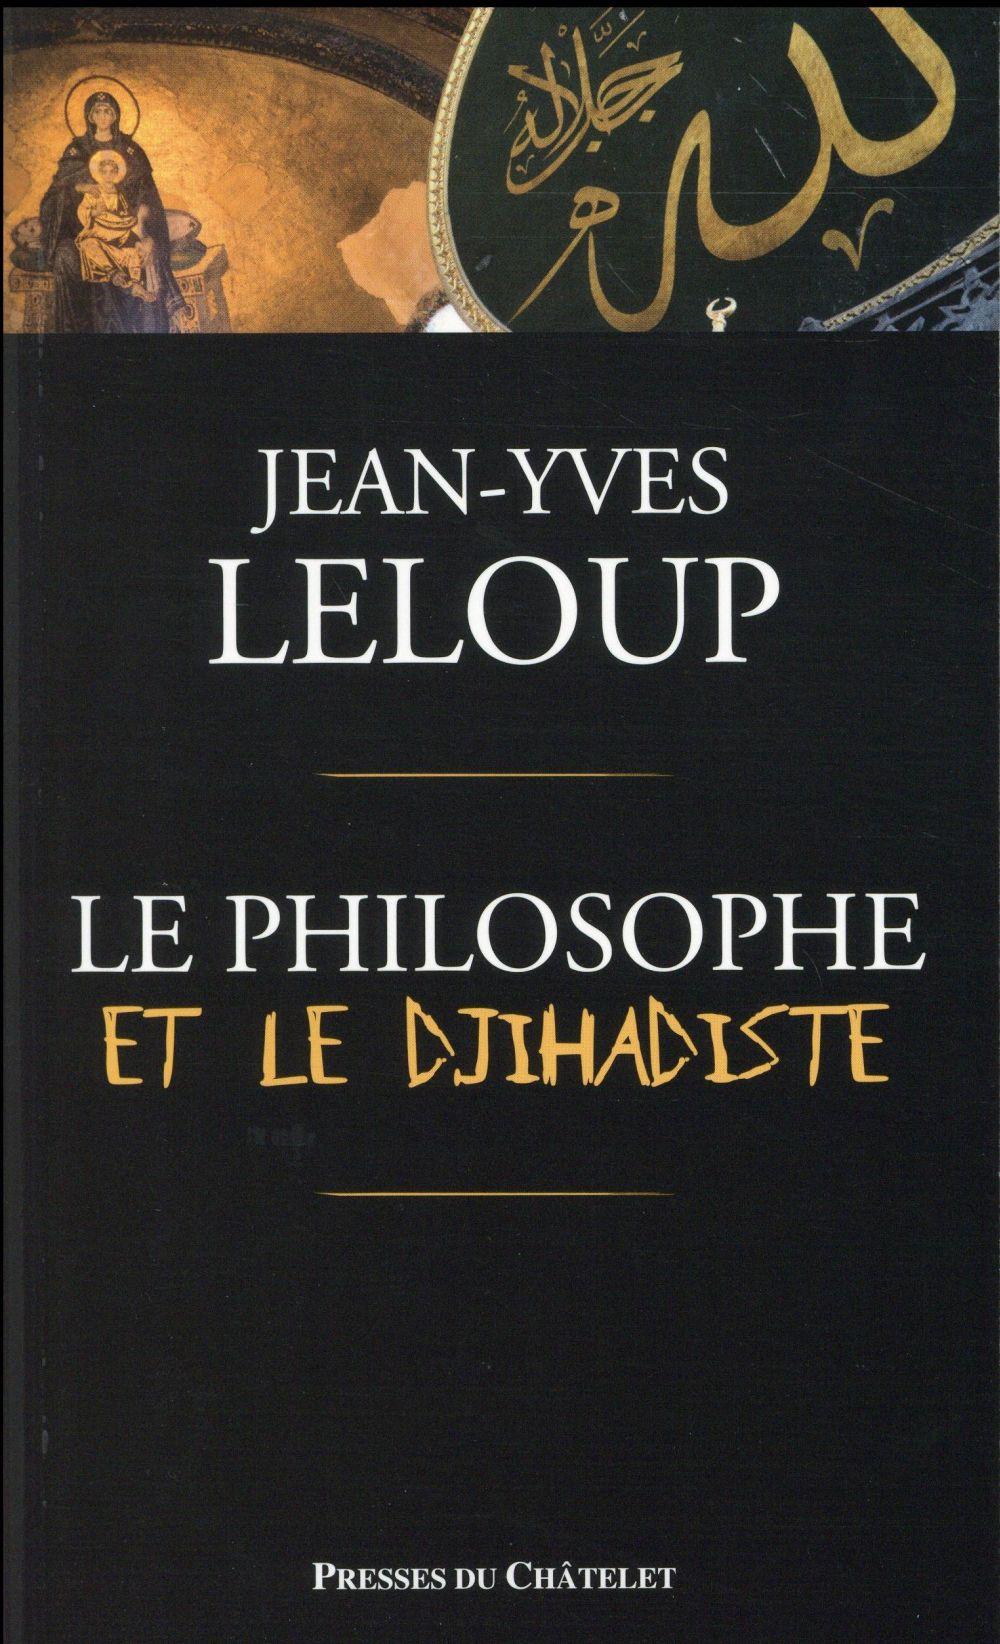 Vente Livre :                                    Le philosophe et le djihadiste
- Jean-Yves Leloup                                     